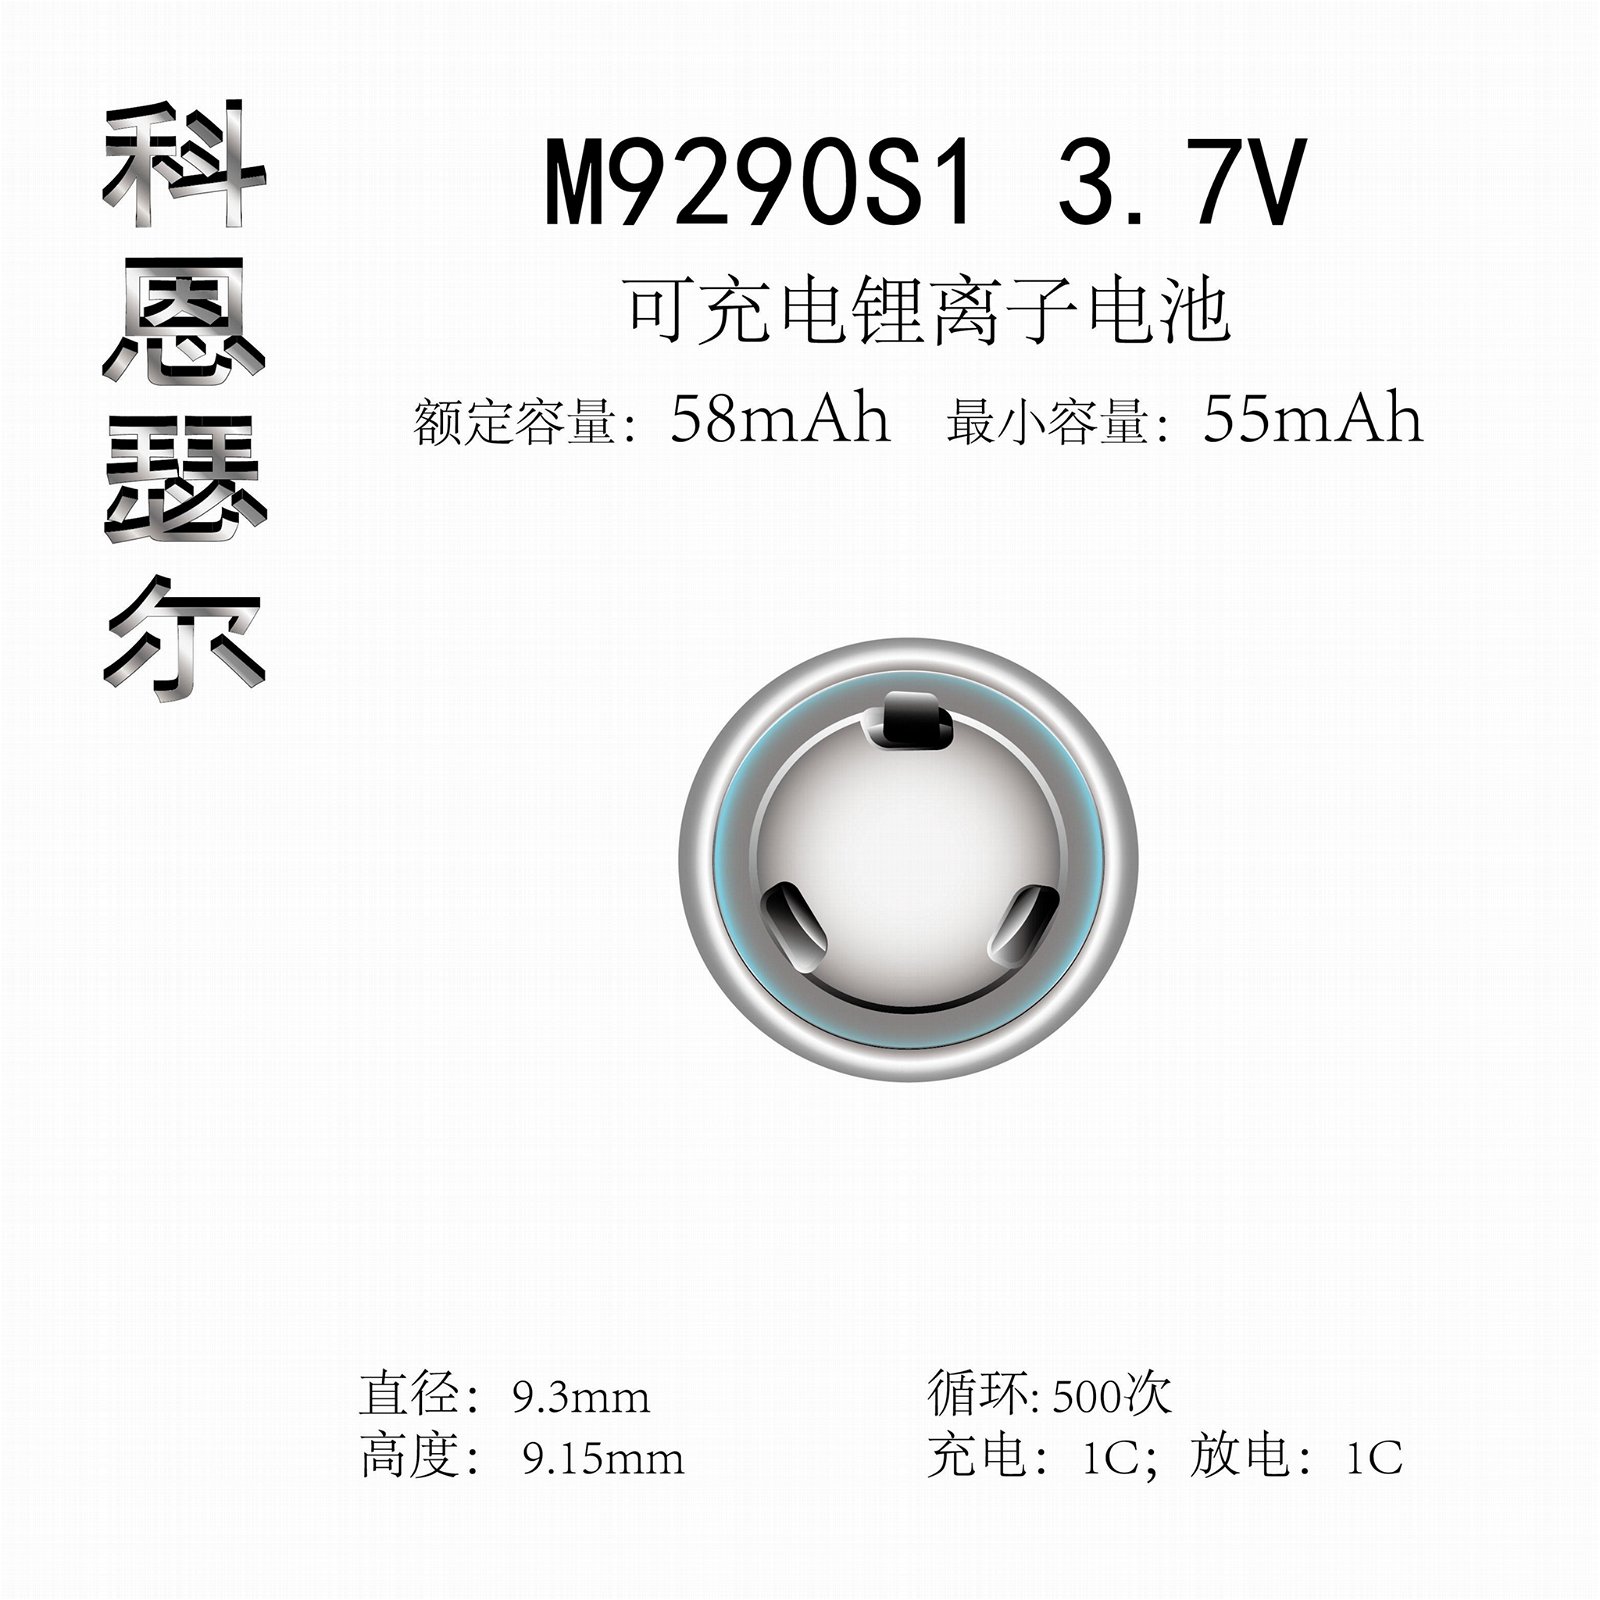 M9290S1 3.7V 58mAh TWS藍牙無線耳機助聽器鋼柱鋰離子電池 2